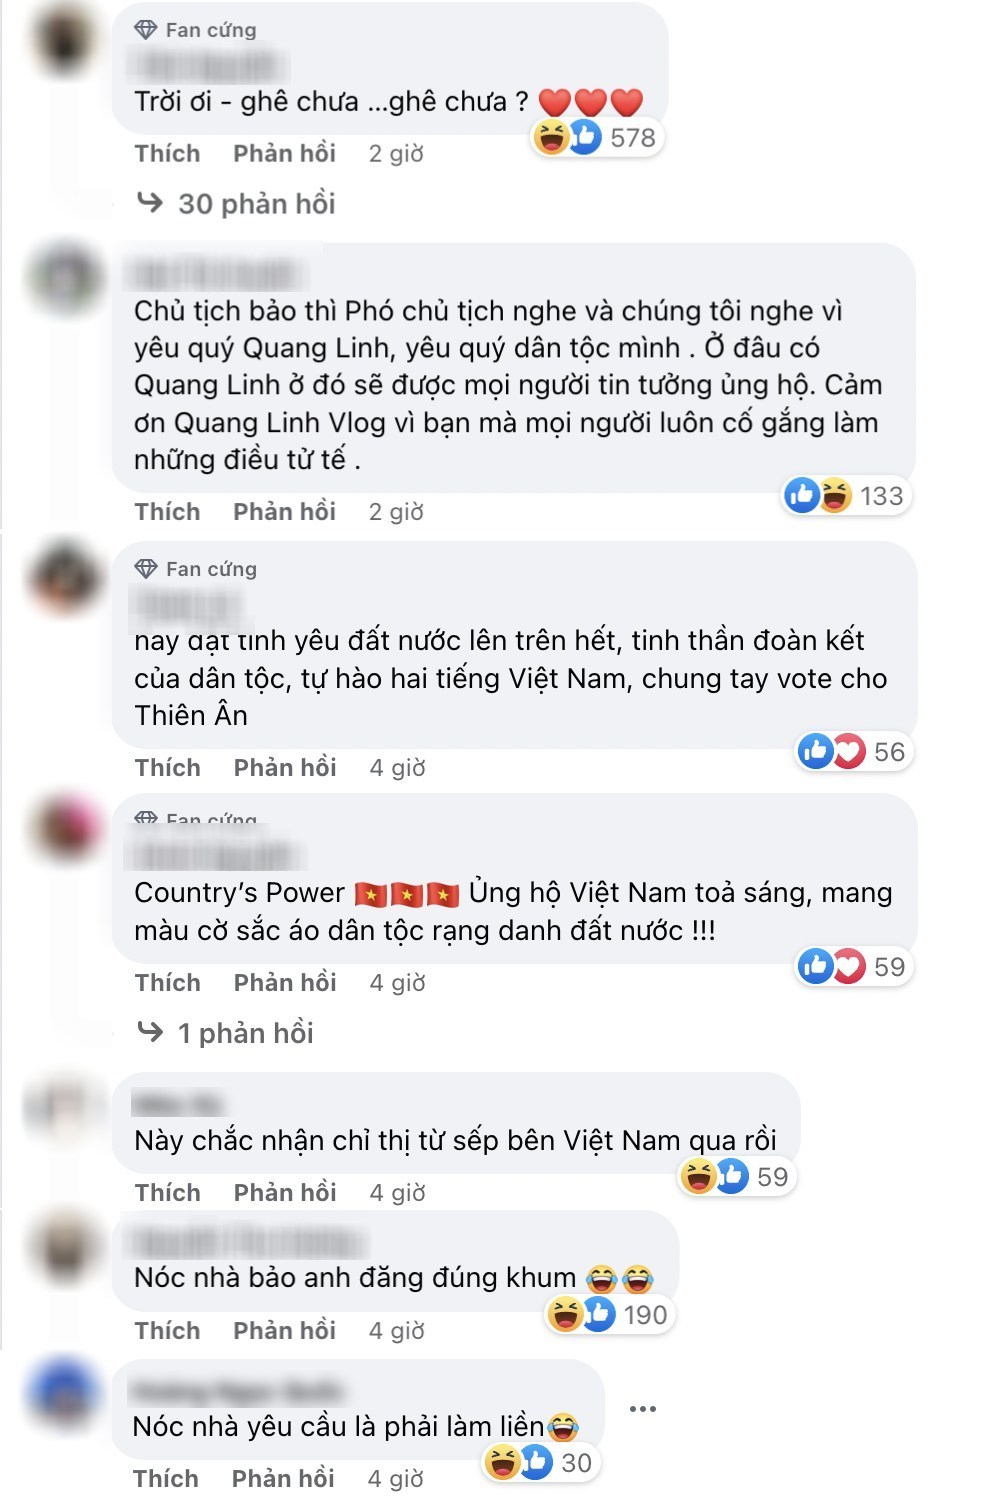  
Dân tình bình luận sôi nổi phía dưới bài đăng của Quang Linh Vlogs. (Ảnh: FB Quang Linh Vlogs)